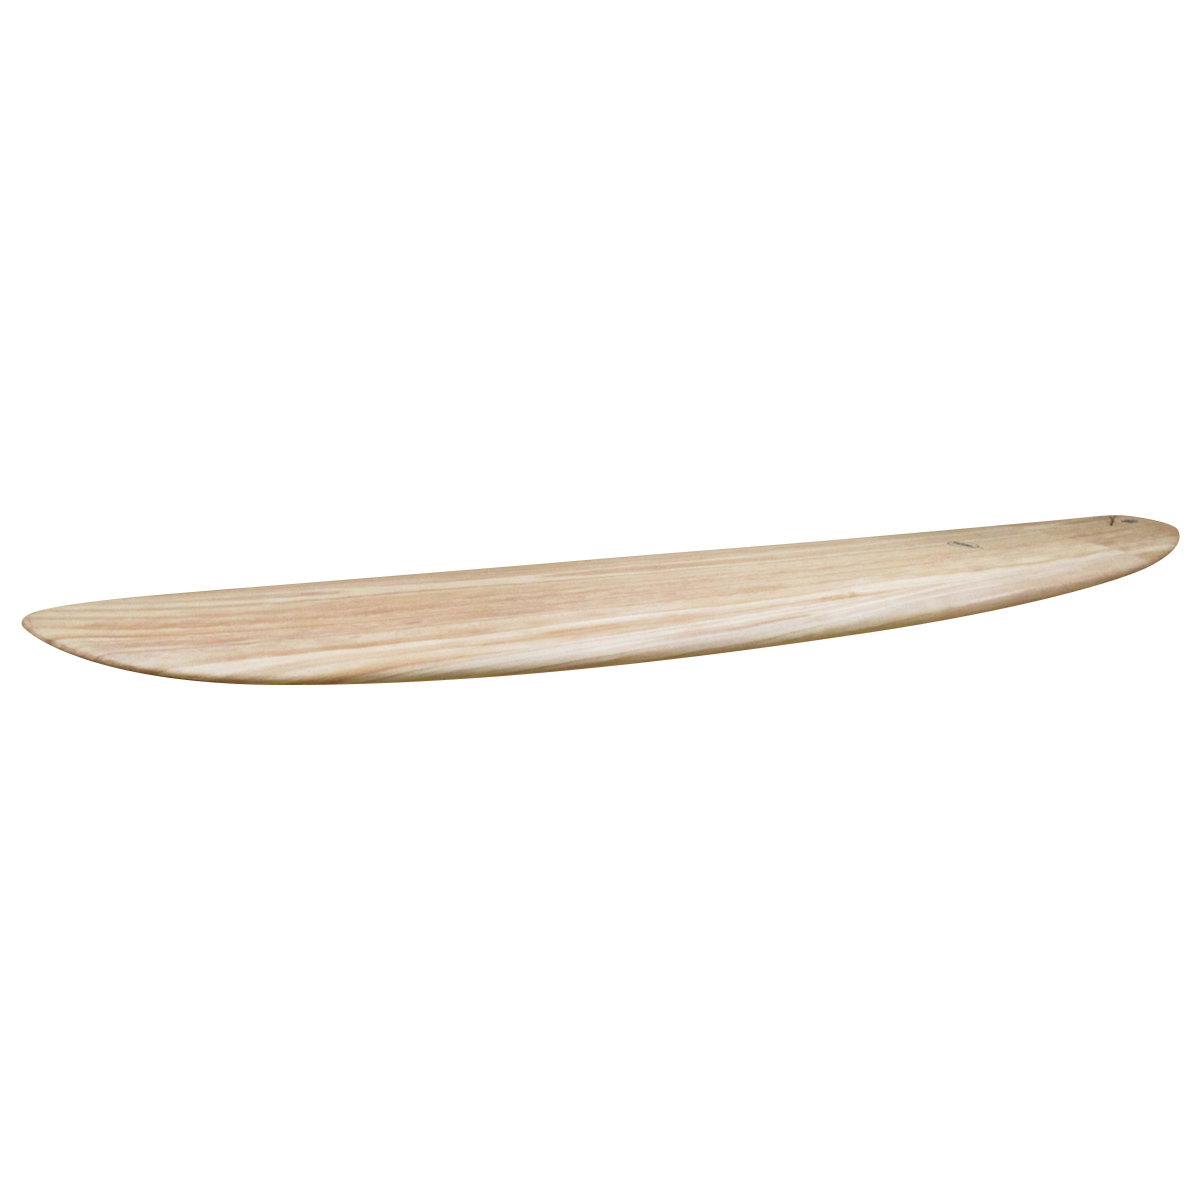 ALOHA SURFBOARDS / CHOPPED LOG  9`4